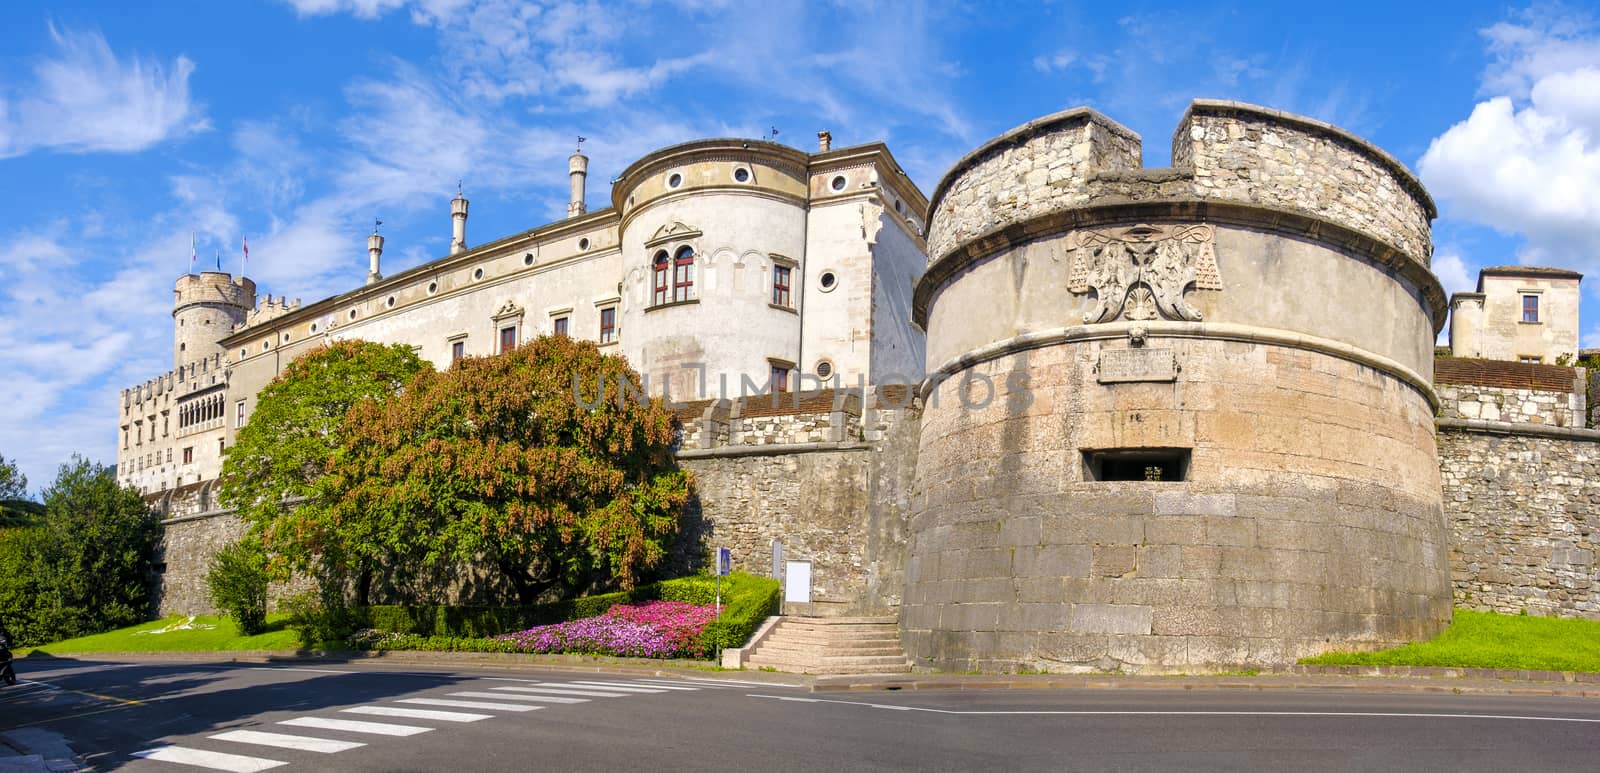 Castello del Buonconsiglio ( Buonconsiglio Castle ) in Trento -  by LucaLorenzelli